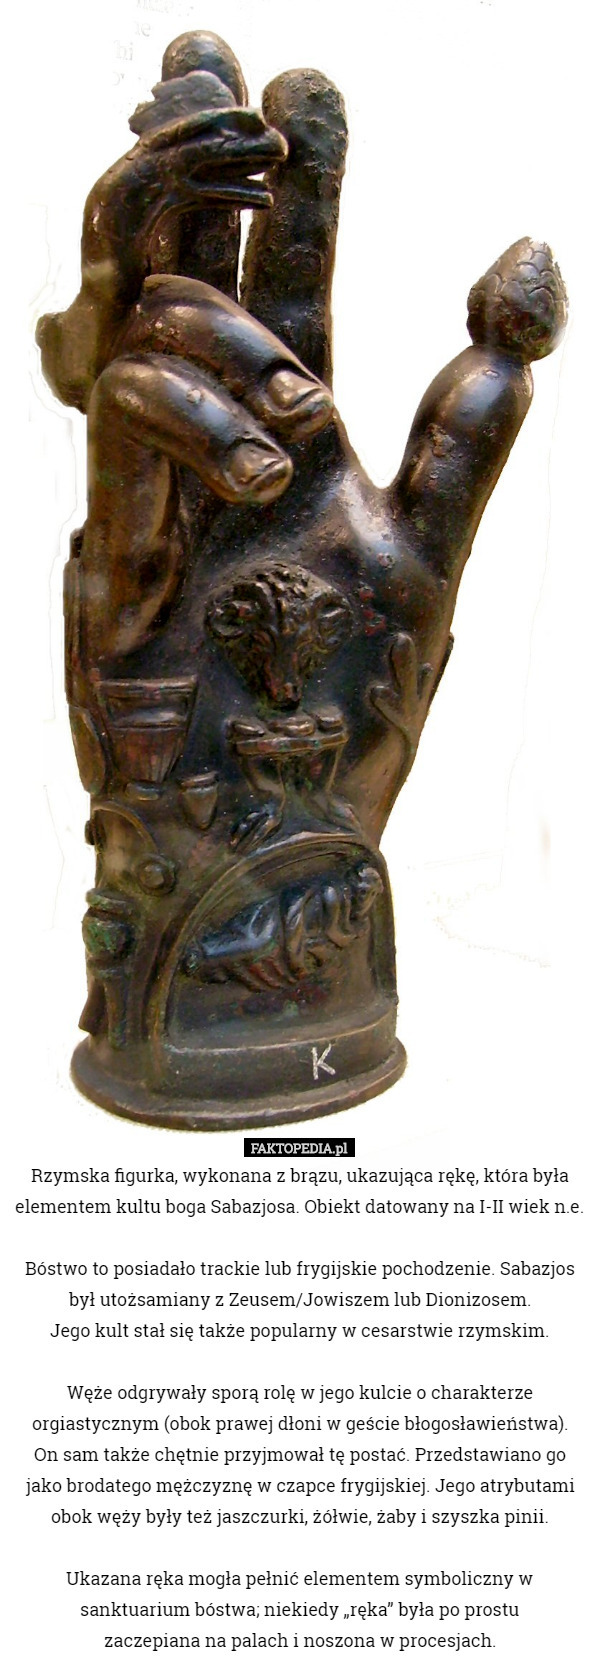 Rzymska figurka, wykonana z brązu, ukazująca rękę, która była elementem kultu boga Sabazjosa. Obiekt datowany na I-II wiek n.e.

Bóstwo to posiadało trackie lub frygijskie pochodzenie. Sabazjos był utożsamiany z Zeusem/Jowiszem lub Dionizosem.
 Jego kult stał się także popularny w cesarstwie rzymskim.

 Węże odgrywały sporą rolę w jego kulcie o charakterze orgiastycznym (obok prawej dłoni w geście błogosławieństwa).
 On sam także chętnie przyjmował tę postać. Przedstawiano go jako brodatego mężczyznę w czapce frygijskiej. Jego atrybutami obok węży były też jaszczurki, żółwie, żaby i szyszka pinii.

 Ukazana ręka mogła pełnić elementem symboliczny w sanktuarium bóstwa; niekiedy „ręka” była po prostu
 zaczepiana na palach i noszona w procesjach. 